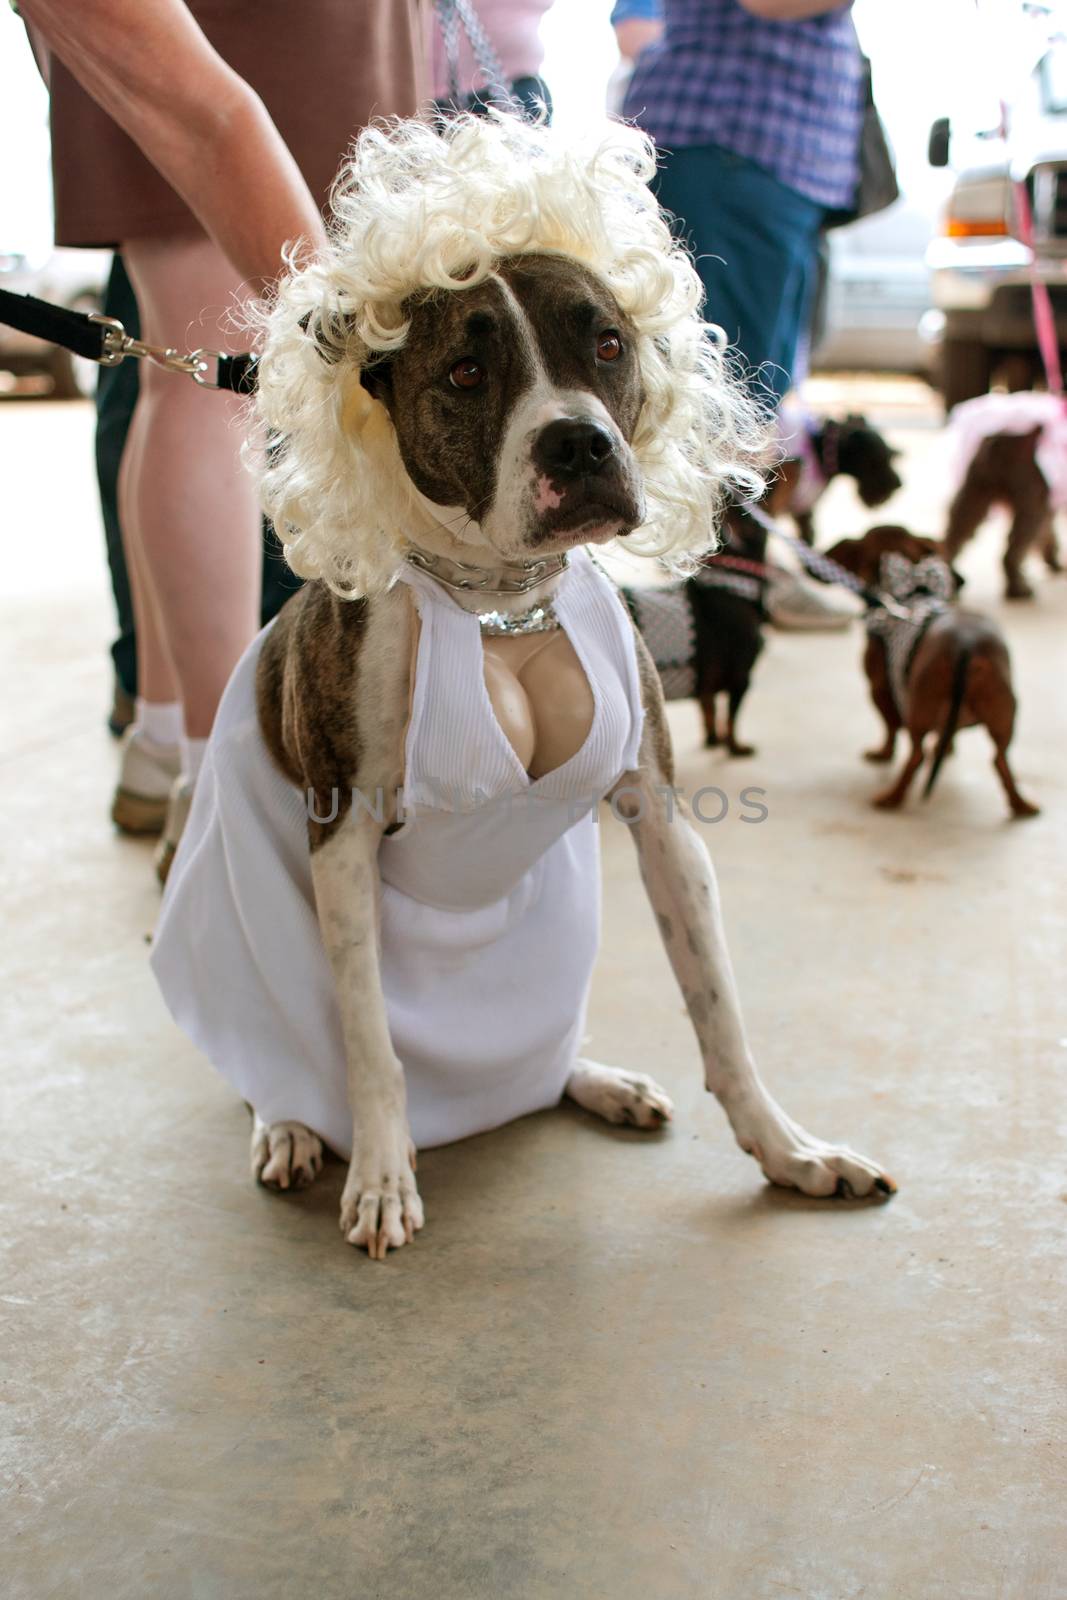 Dog Wears Marilyn Monroe Costume In Contest by BluIz60